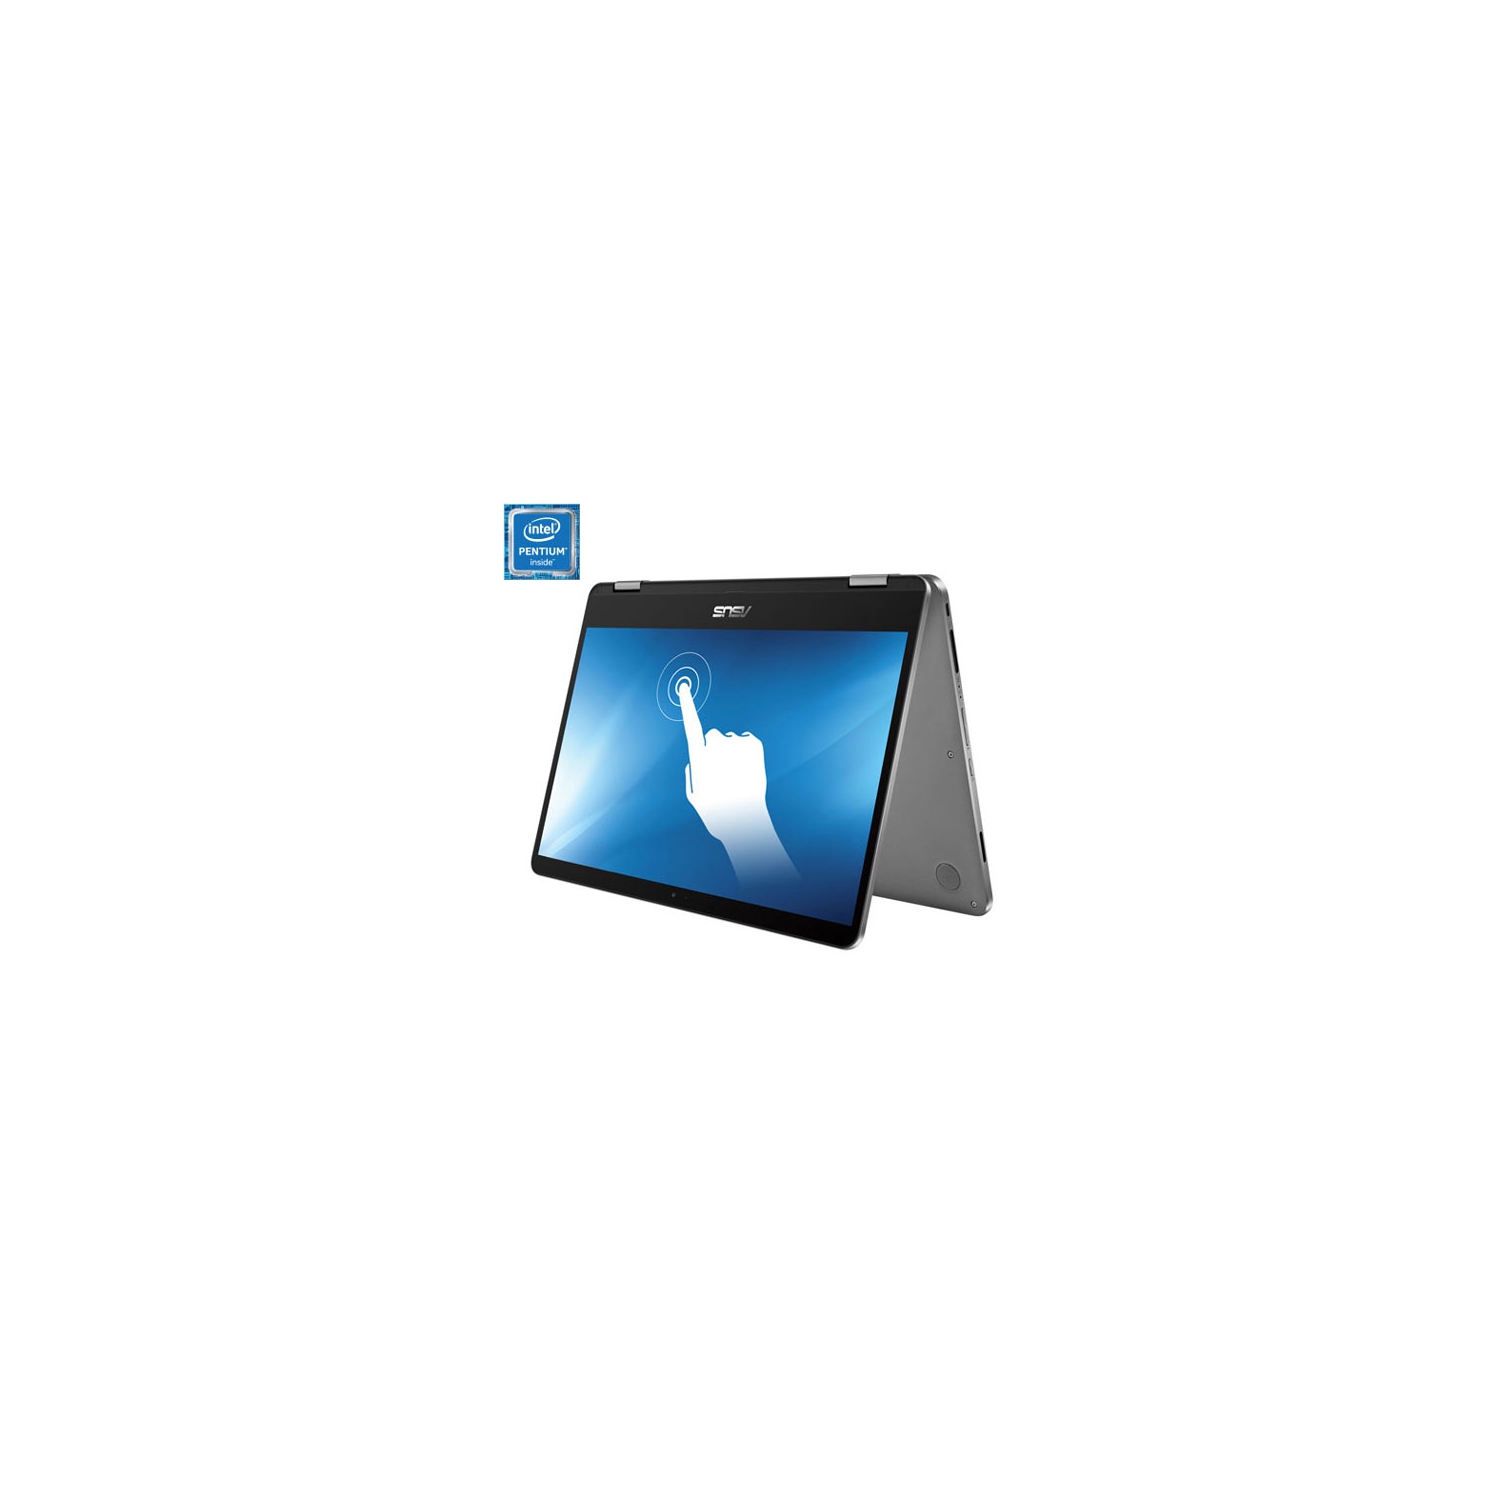 ASUS VivoBook Flip 14" 2-in-1 Laptop w/ 1 year of Microsoft 365 (Intel/128GB SSD/4GB RAM/Win 10S) - Open Box